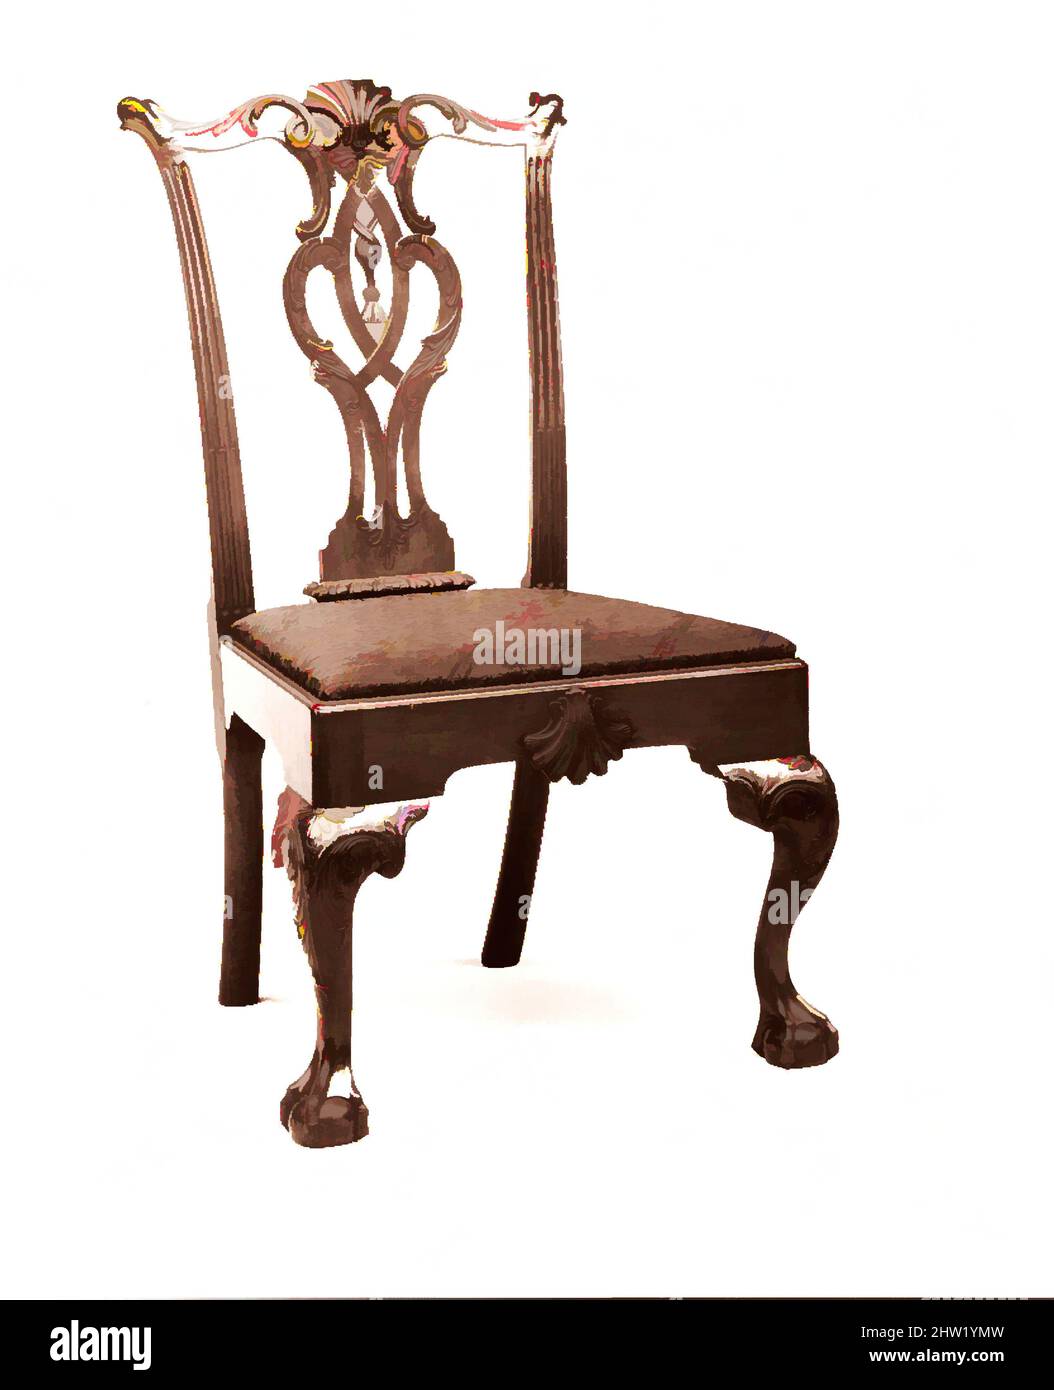 Art Inspired by SIDE Chair, 1760–90, made in Philadelphia, Pennsylvania, Stati Uniti, Americano, mogano, pino bianco, 40 1/2 x 21 3/4 x 21 1/4 pollici (102,9 x 55,2 x 54 cm), Furniture, questa sedia rappresenta il tipo di Splat Filadelfia scrolled-stropwork al suo meglio raffinato. Le opere scolpite, Classic modernizzate da Artotop con un tuffo di modernità. Forme, colore e valore, impatto visivo accattivante sulle emozioni artistiche attraverso la libertà delle opere d'arte in modo contemporaneo. Un messaggio senza tempo che persegue una nuova direzione selvaggiamente creativa. Artisti che si rivolgono al supporto digitale e creano l'NFT Artotop Foto Stock